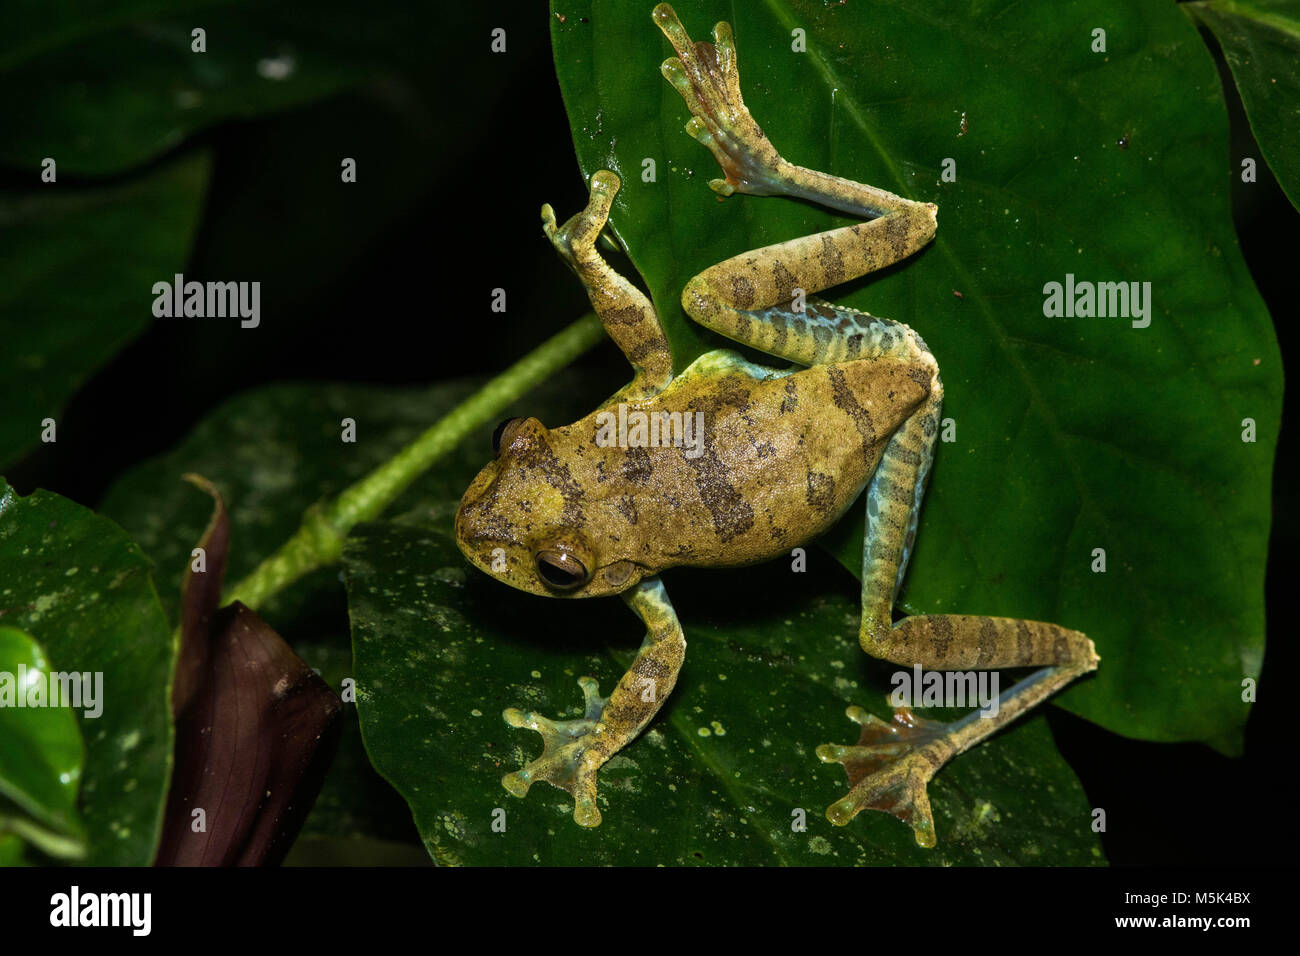 A tree frog (Hypsiboas sp) from Southern Ecuador. Stock Photo